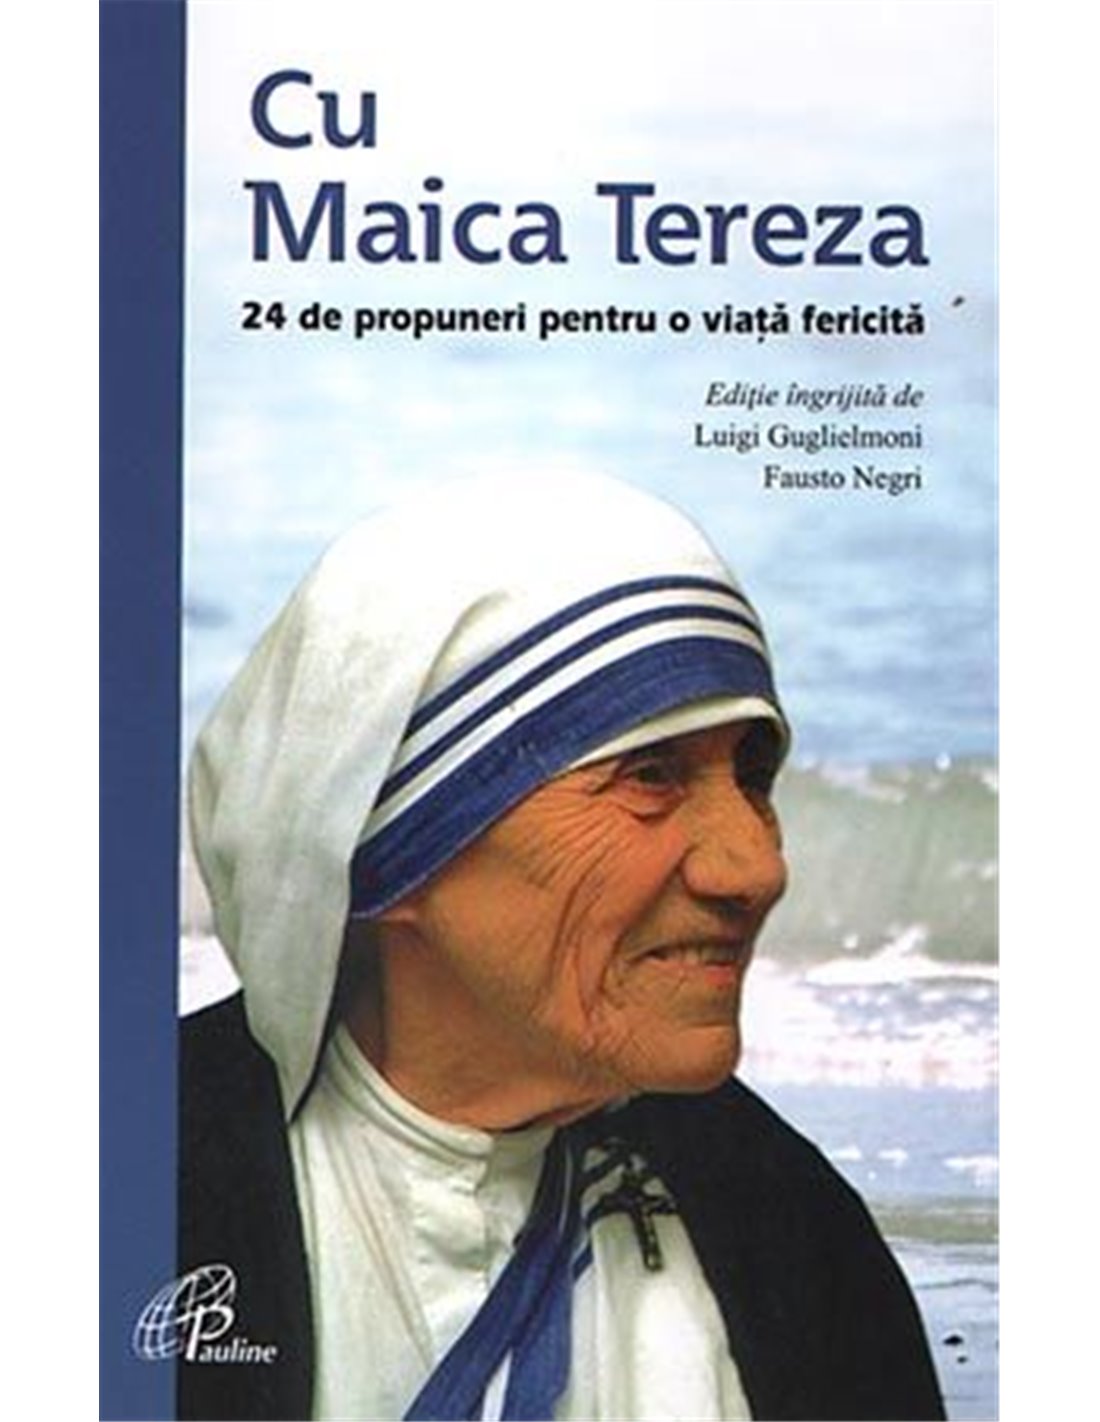 Cu Maica Tereza | Editura Pauline